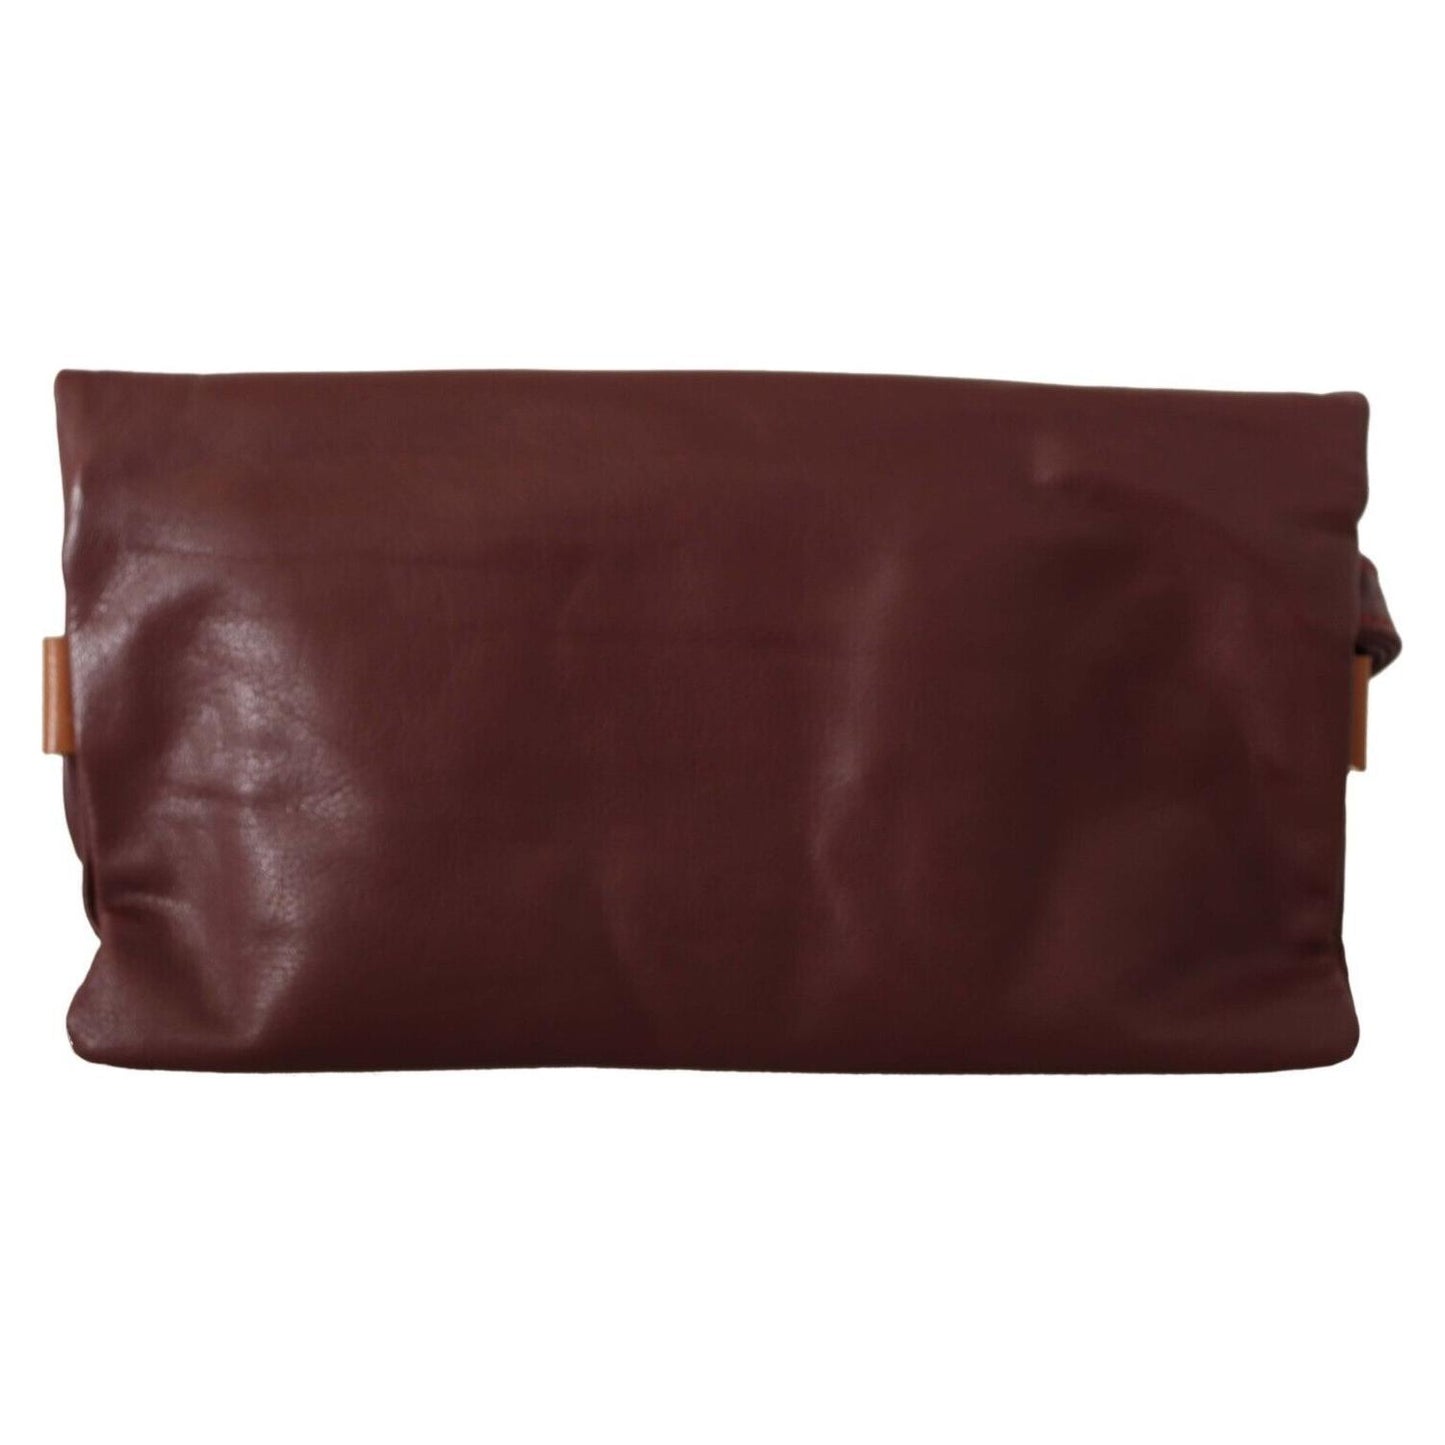 McRichard Designer Brands Elegant Brown Leather Clutch with Silver Detailing elegant-brown-leather-clutch-with-silver-detailing